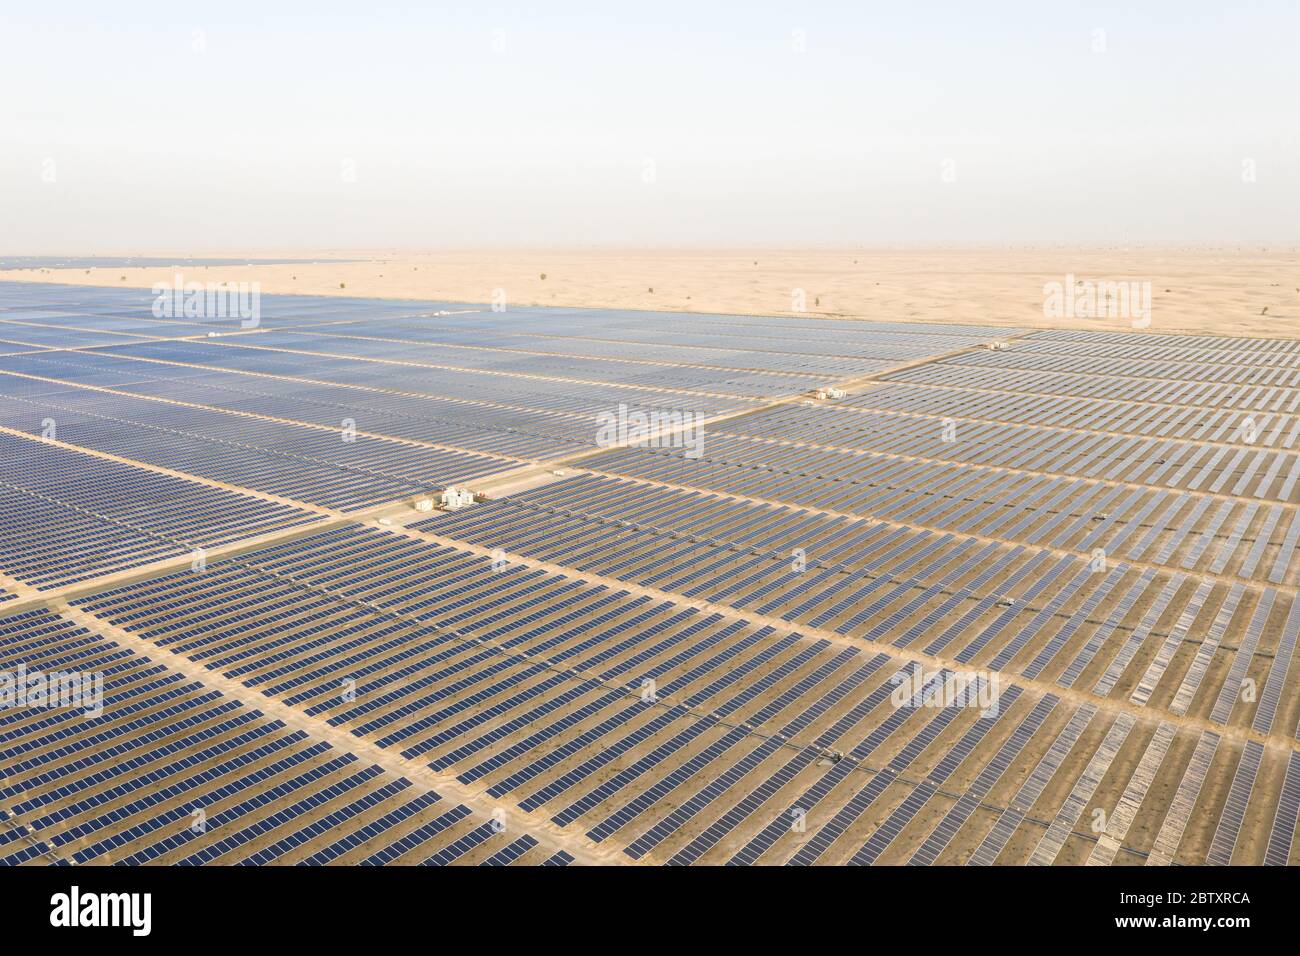 Vue aérienne d'un panneau solaire photovoltaïque et de transformateurs produisant une énergie renouvelable durable dans une centrale électrique désertique. Banque D'Images